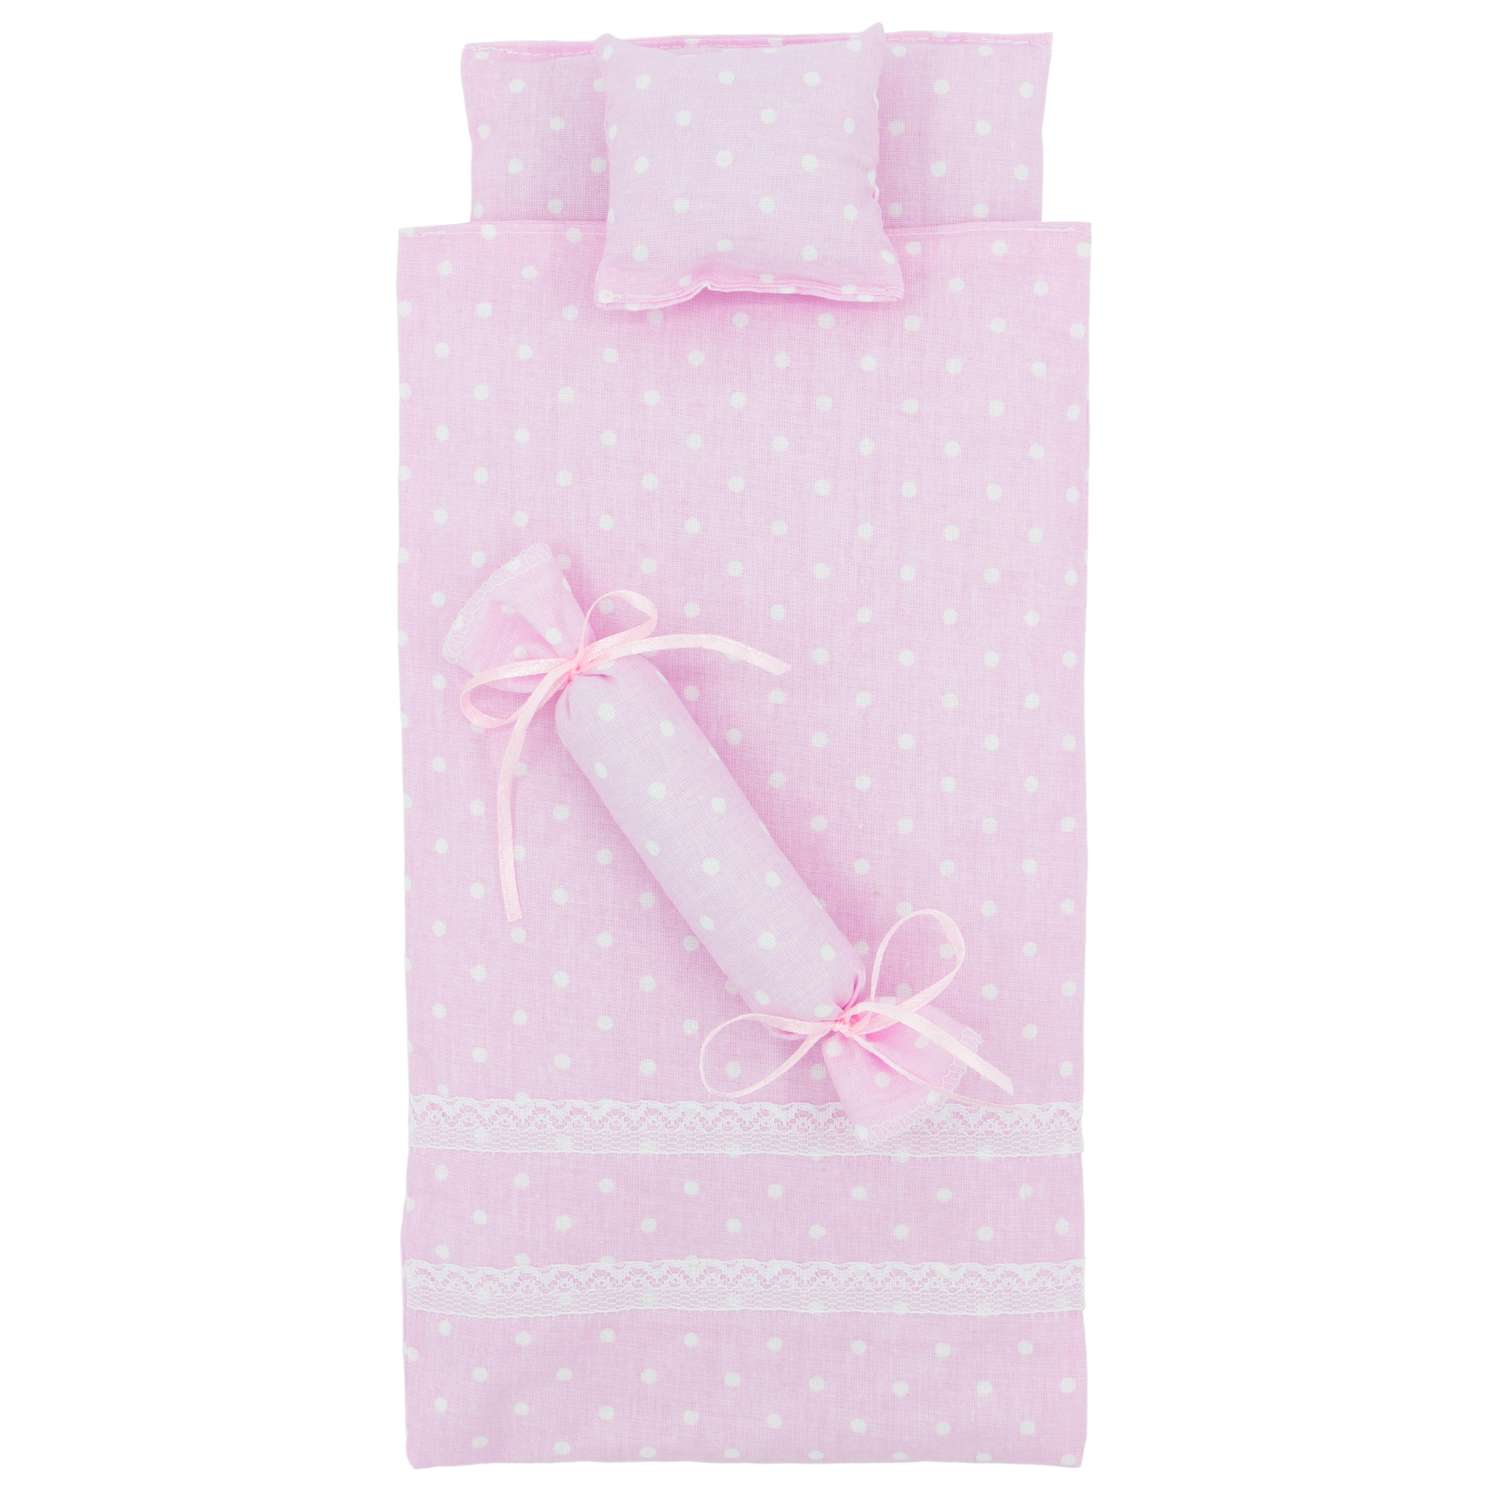 Комлпект постельного белья Модница для куклы 29 см пастельно-розовый 2002пастельно-розовый - фото 6